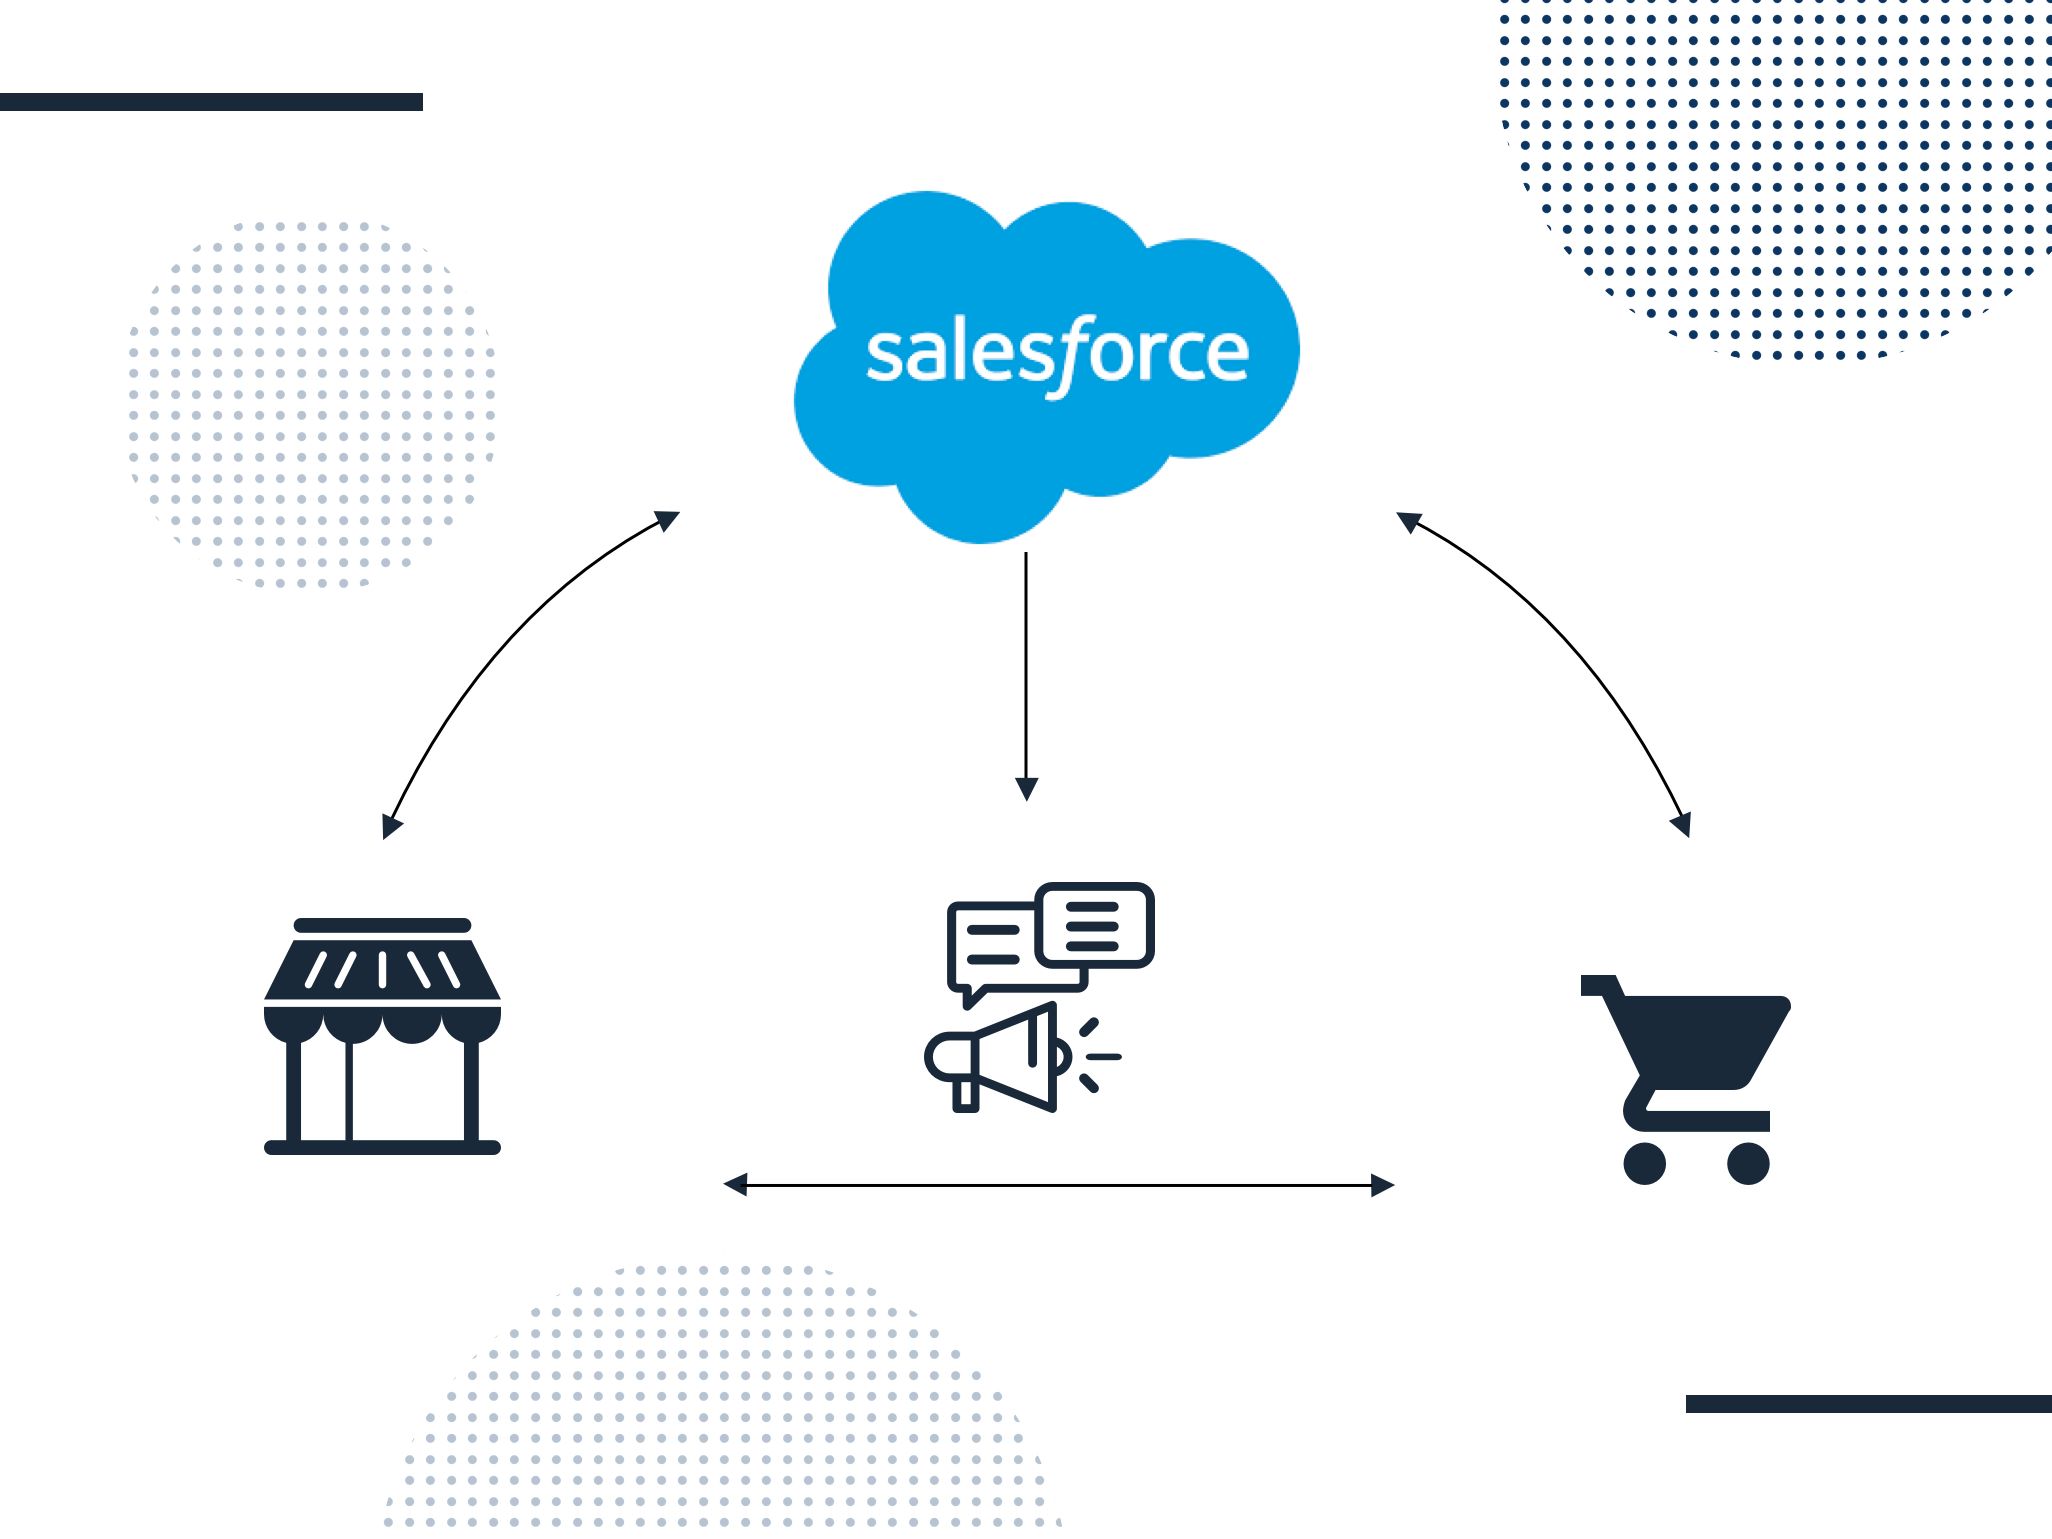 Salesforce verknüpft als neues CRM-System smart die Daten der Kunden über alle Touchpoints